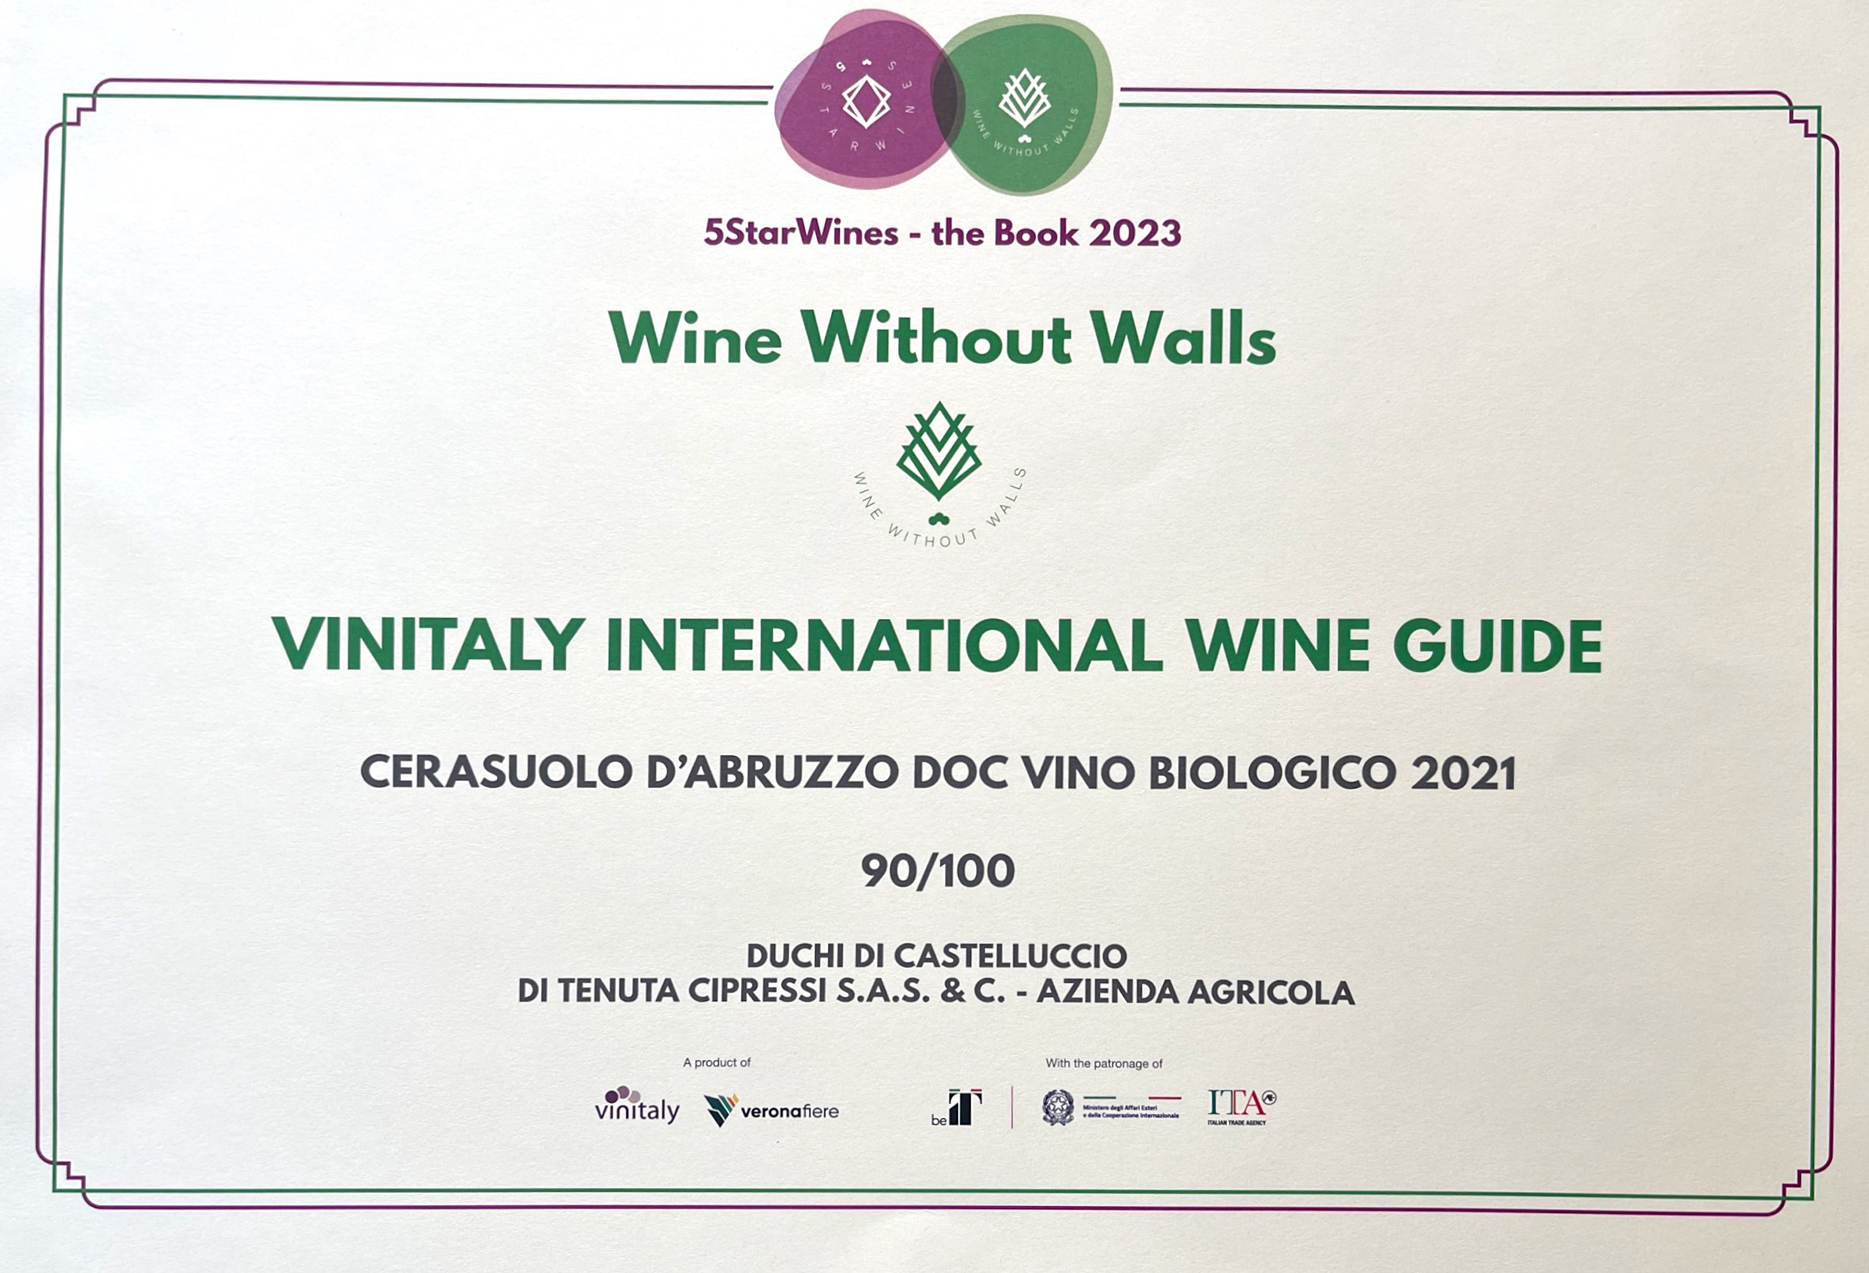 Winitaly International Wine Guide 2022 AWARD for Cerasuolo d'Abruzzo Duchi di castelluccio award 2022 vinitaly veronafiera